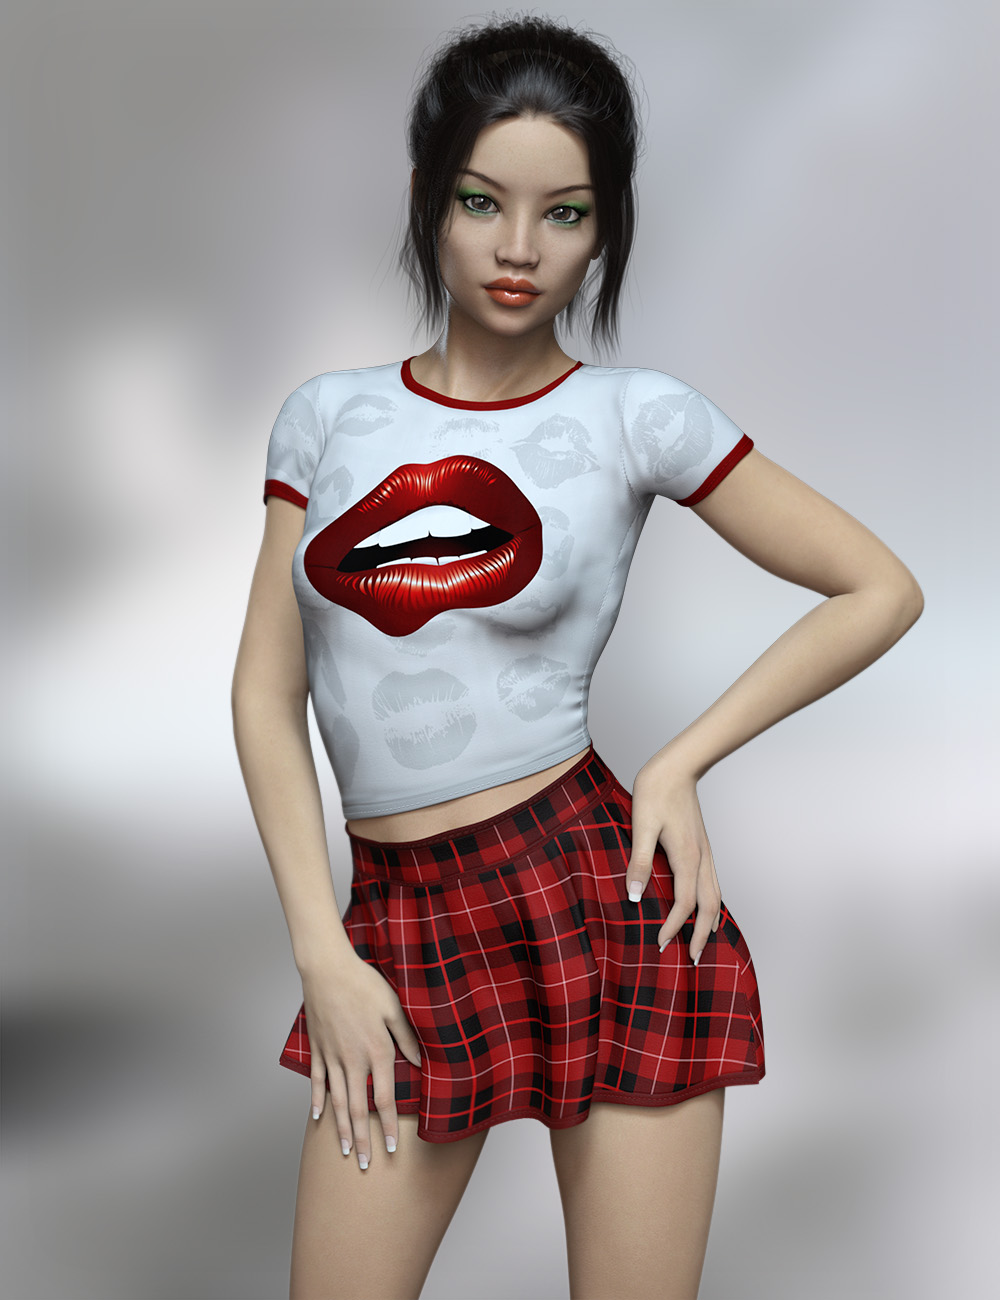 FWSA Maelynn HD for Teen Kaylee 8 by: Fred Winkler ArtSabby, 3D Models by Daz 3D